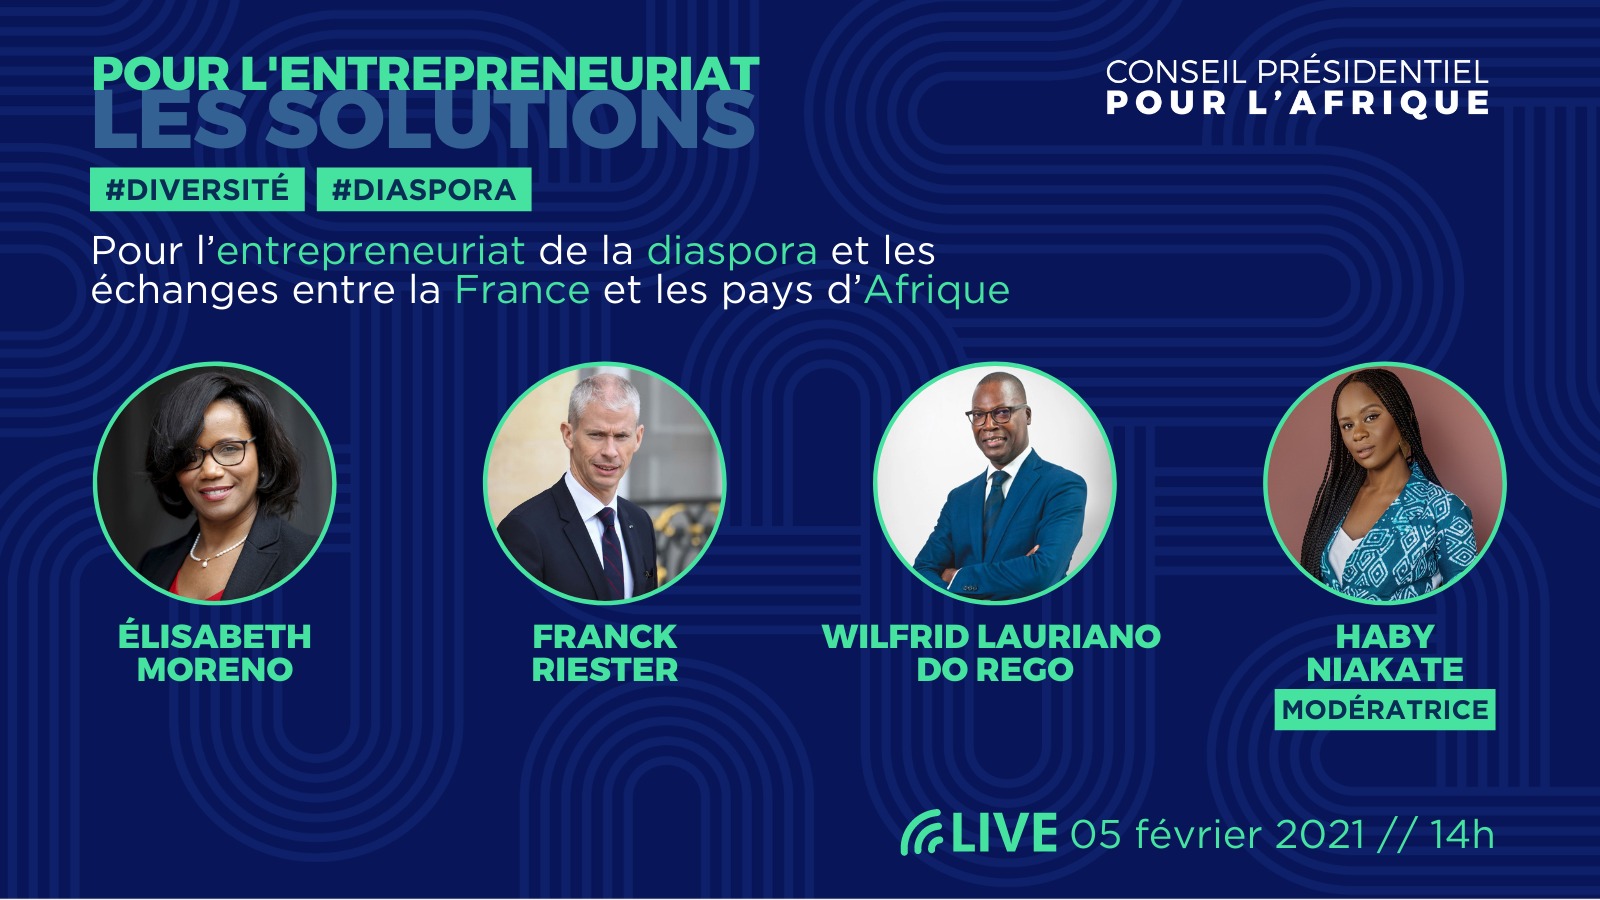 [ECONOMIE] Participez le 5 février 2021 à la dernière étape du tour de France pour l’entrepreneuriat des diasporas organisée par le Conseil Présidentiel pour l’Afrique